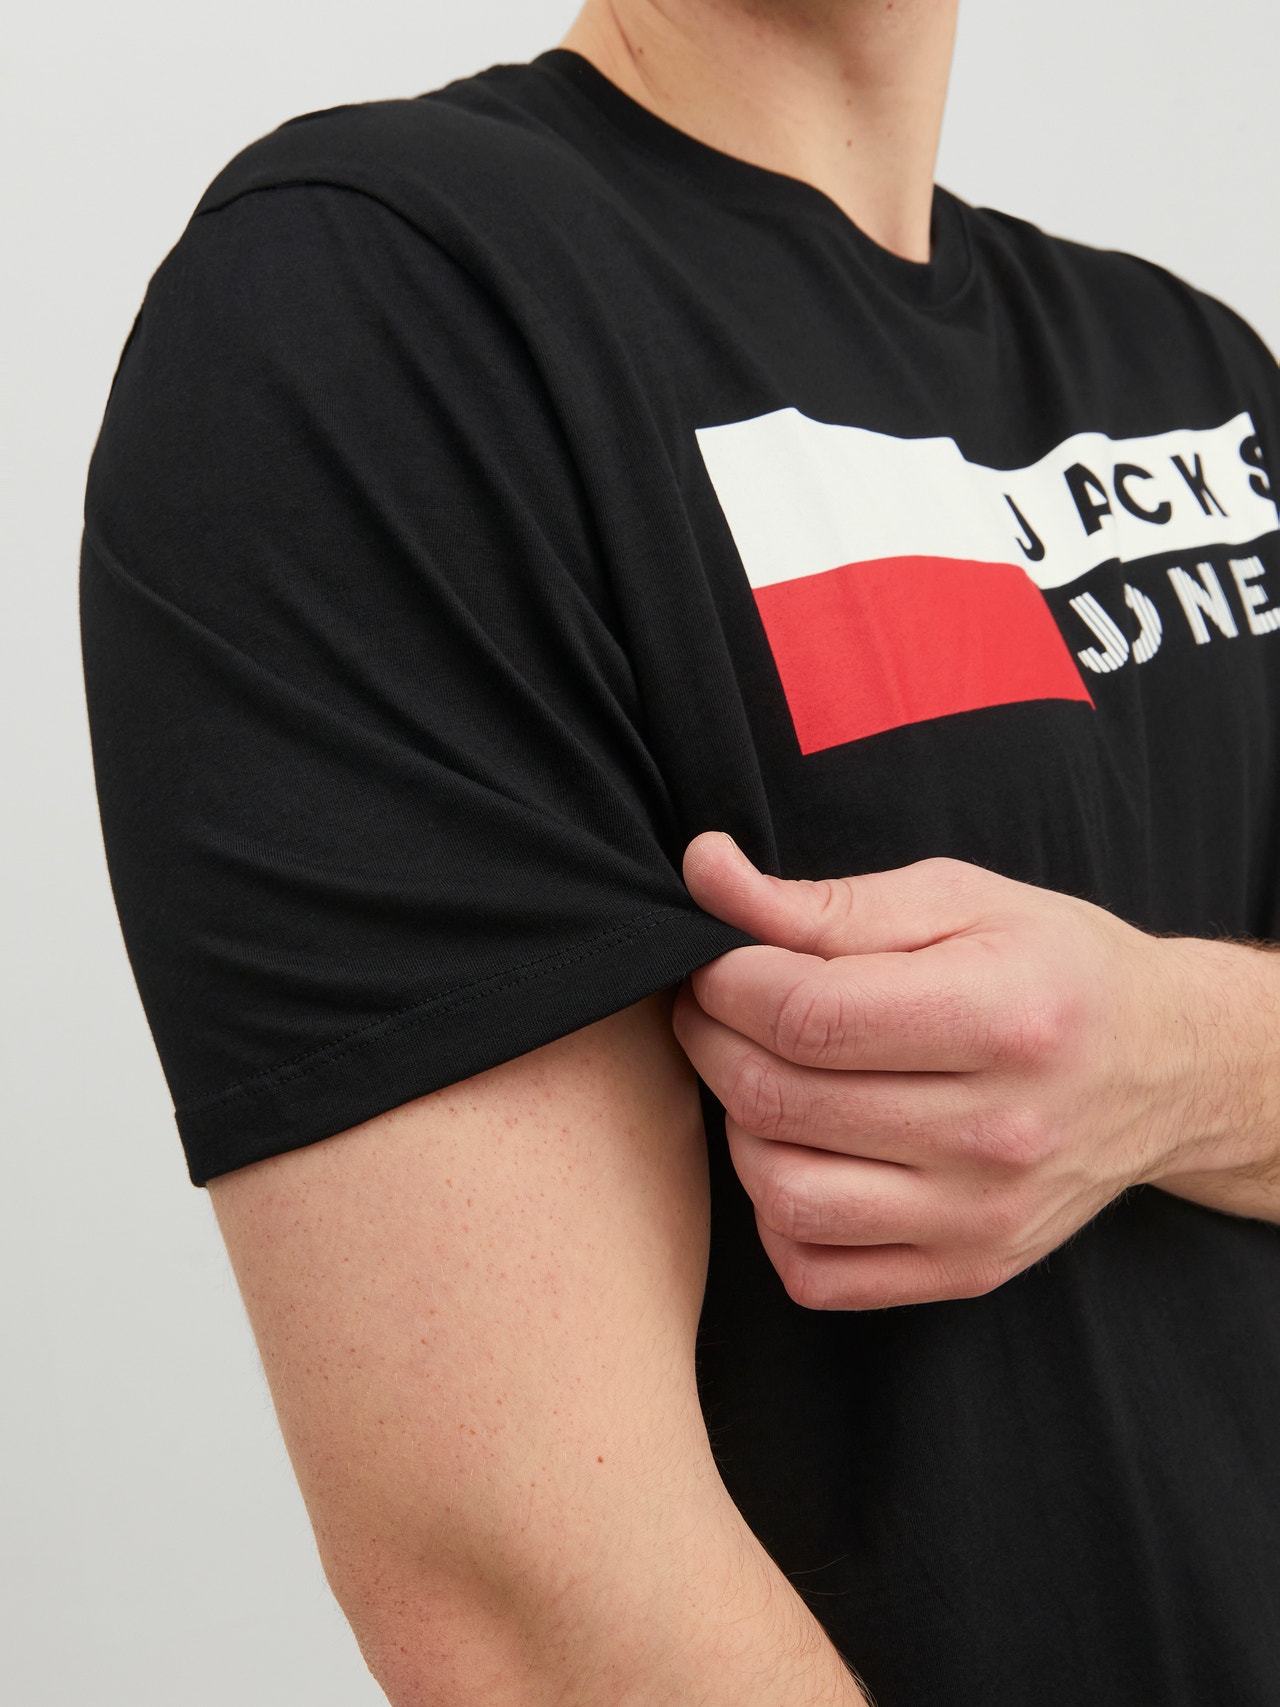 Jack & Jones Plus Logo T-shirt -Black - 12158505